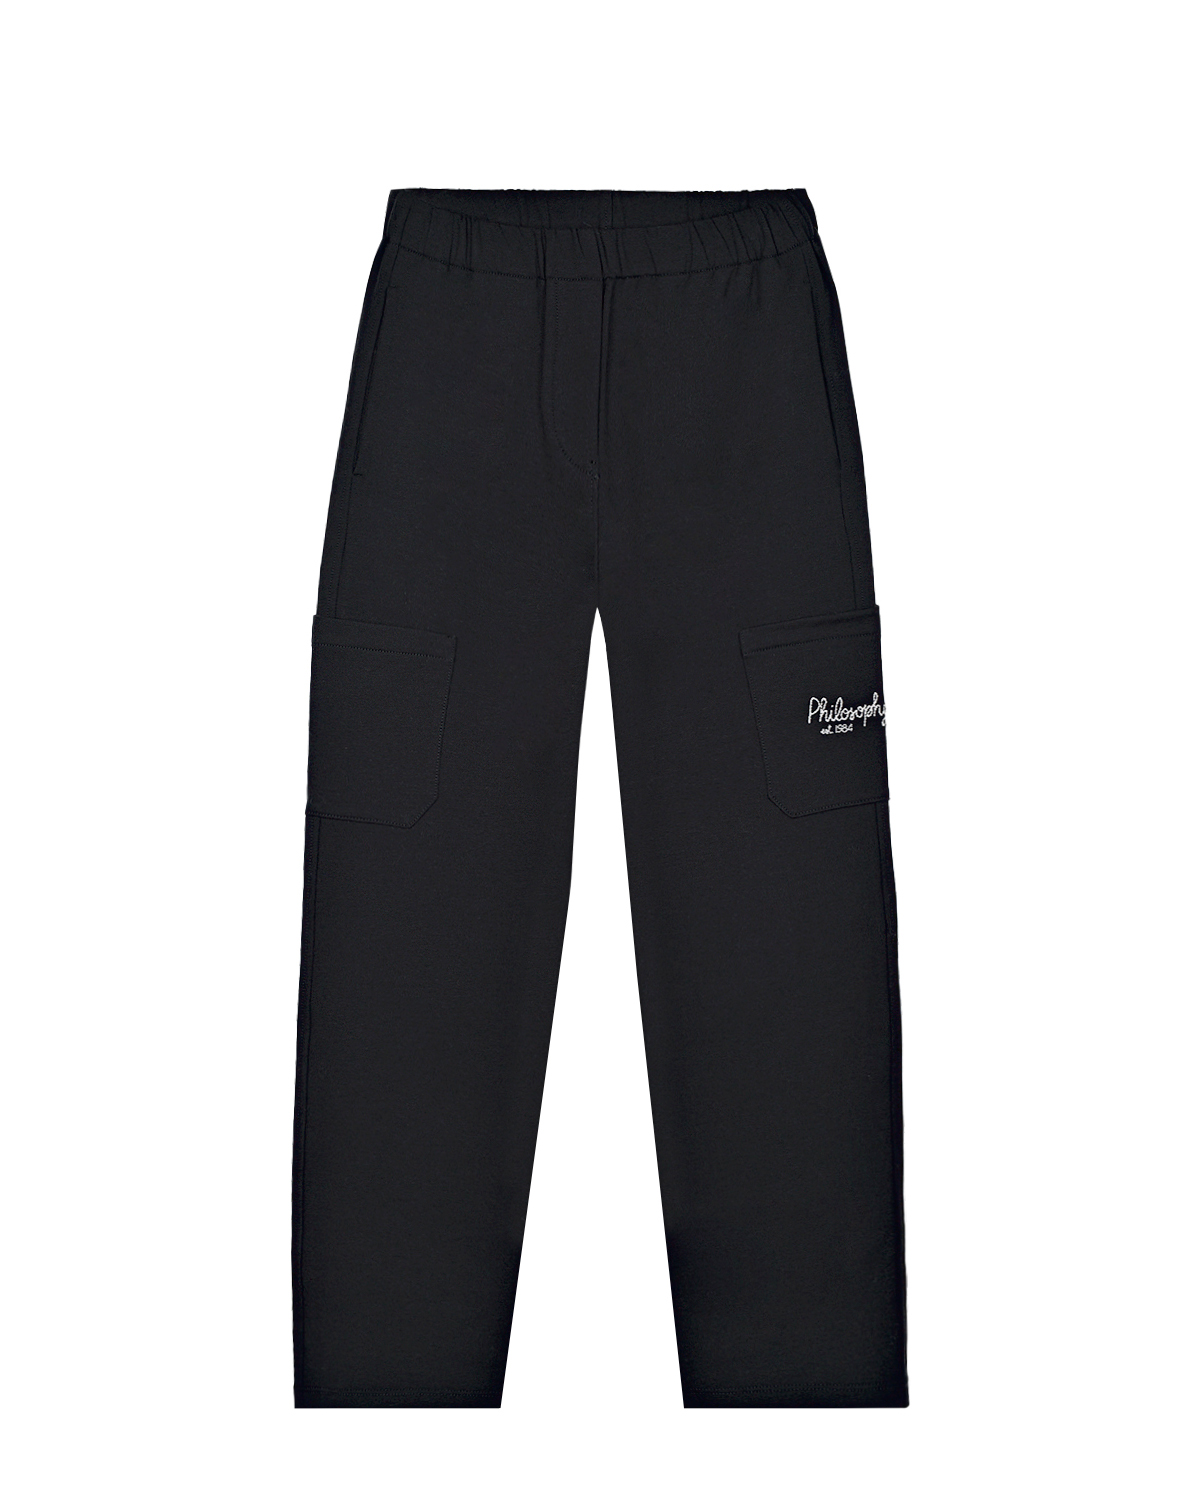 Черные спортивные брюки с накладным карманом Philosophy di Lorenzo Serafini Kids детские, размер 164, цвет черный - фото 1